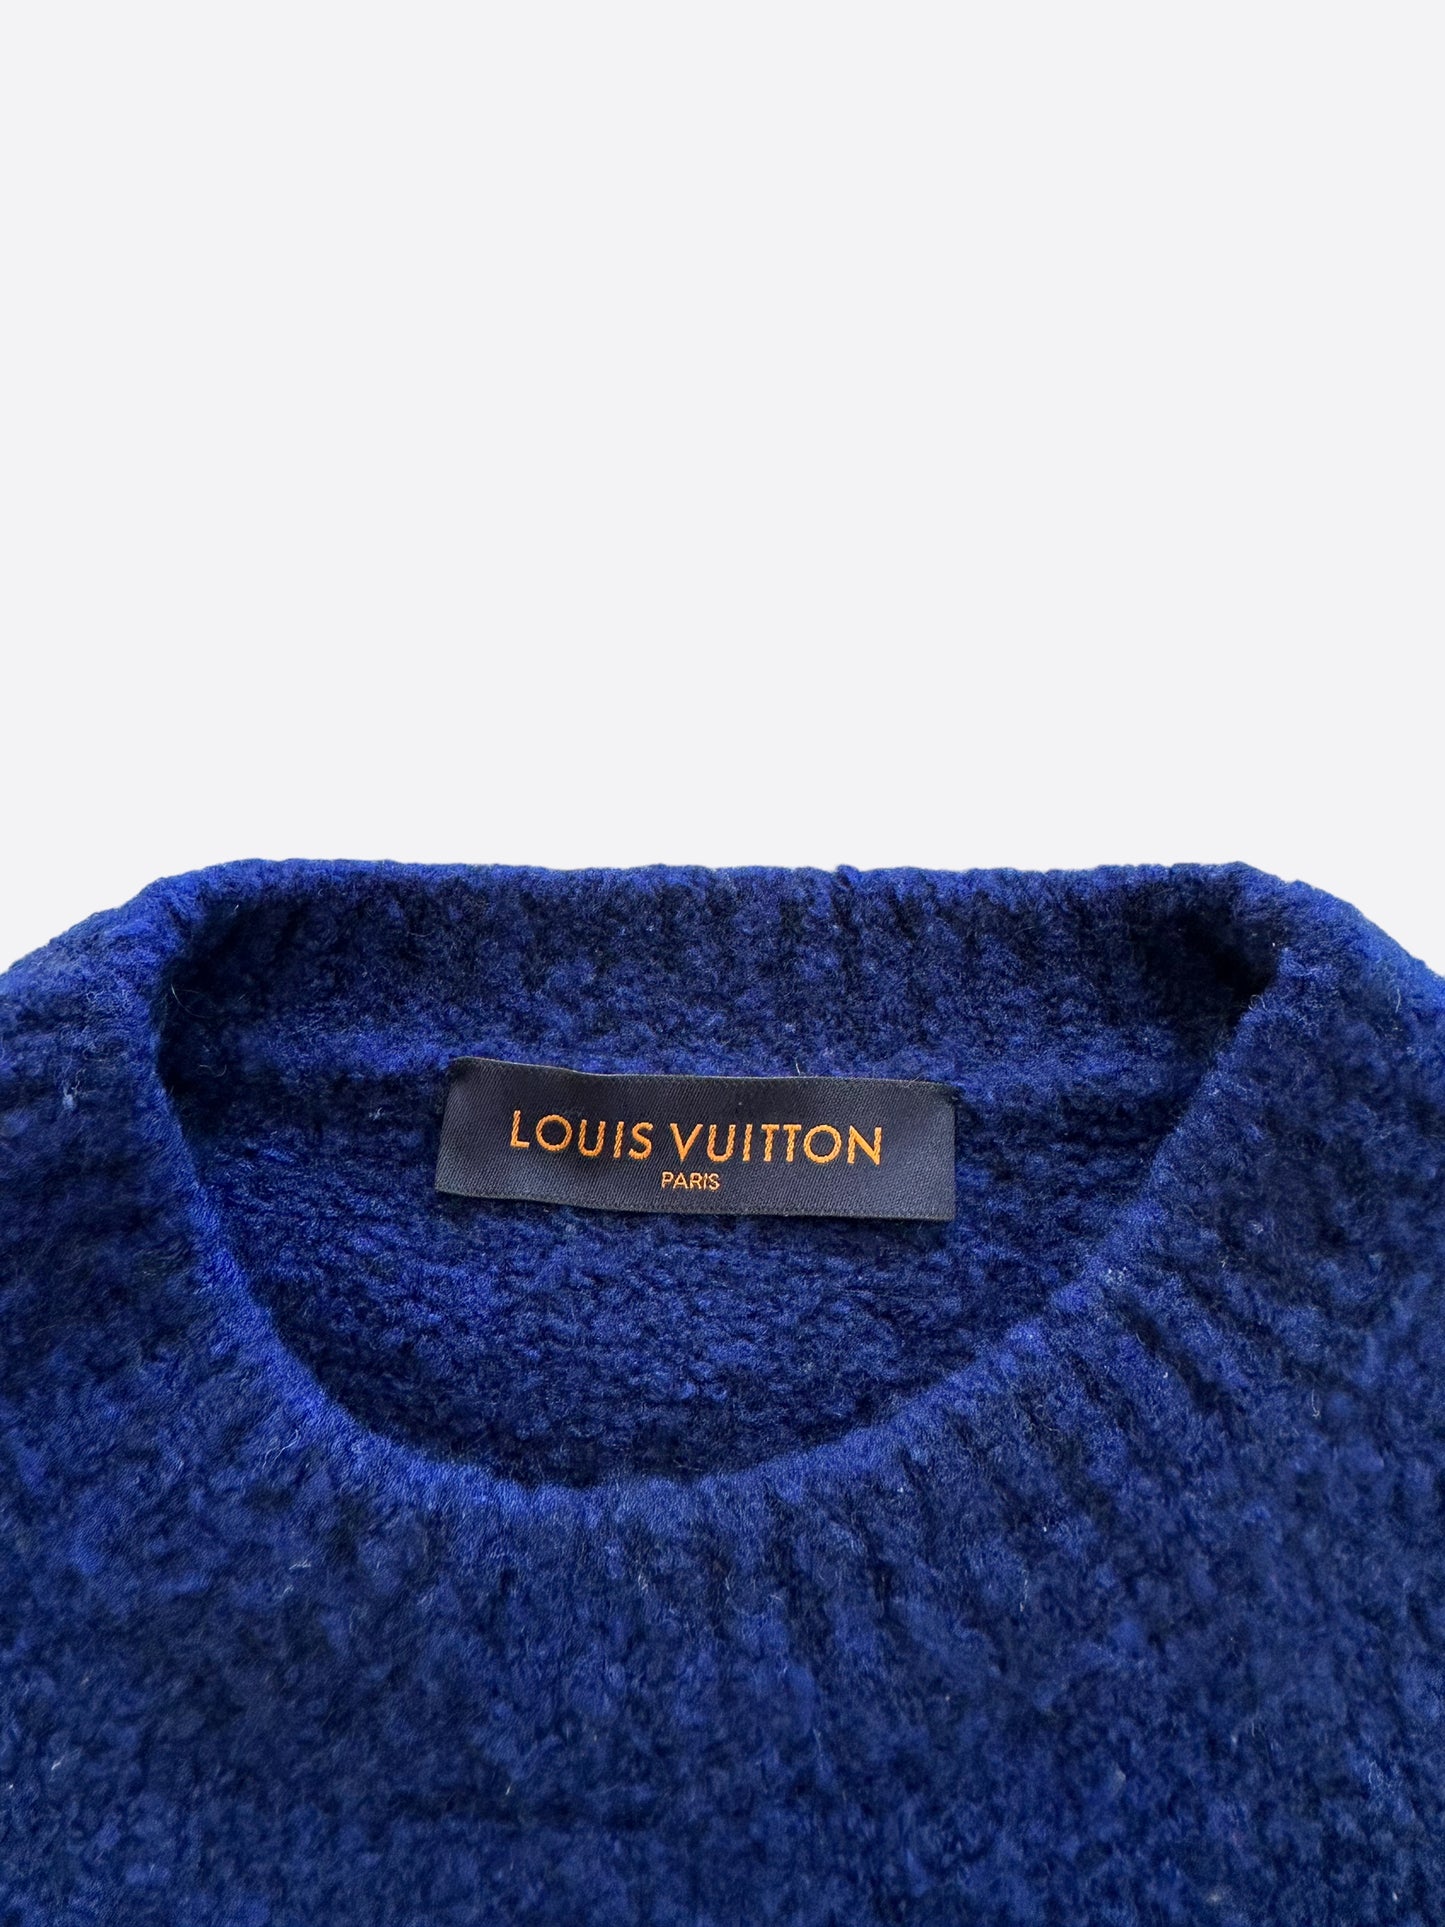 Chewy Vuitton Wooly Sweatshirt